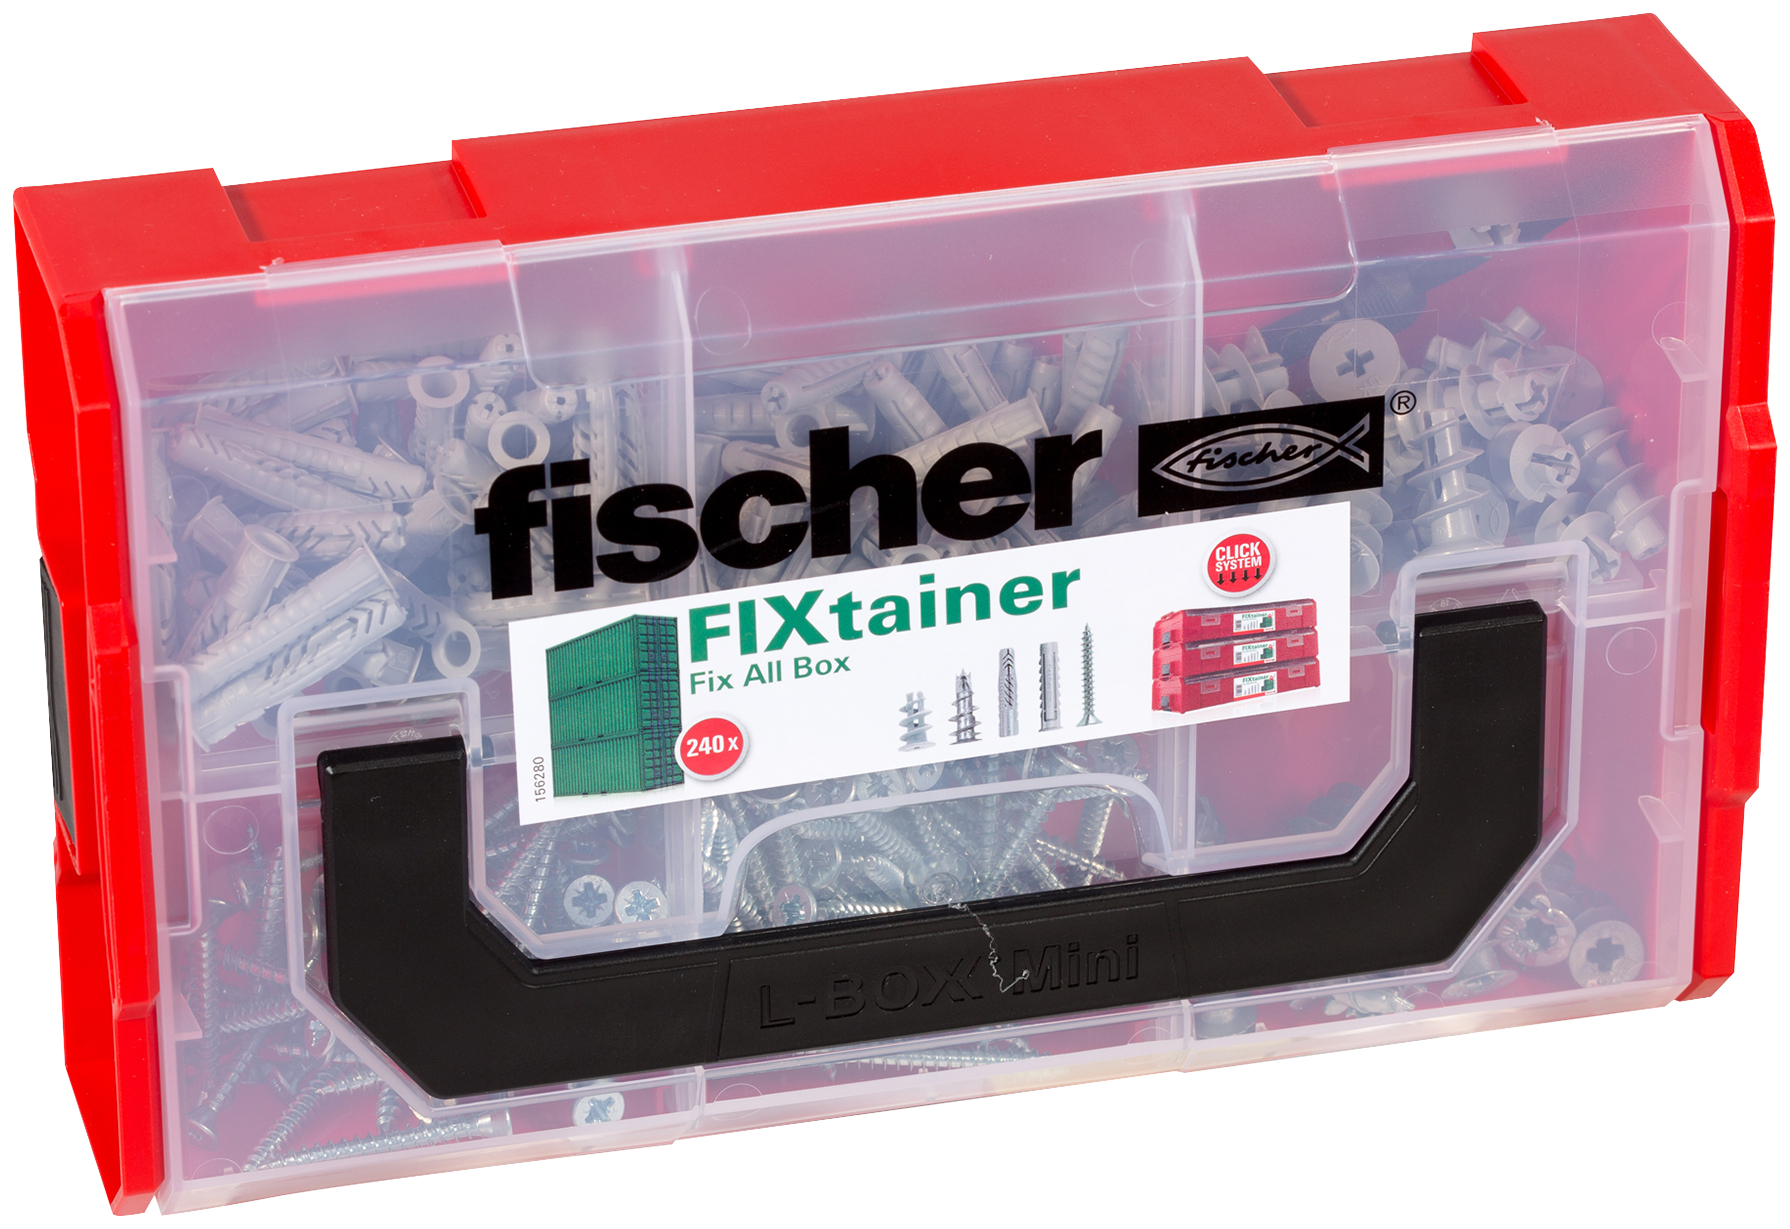 fischer FIXtainer UX SX GK screw (141 Pz.) Pratiche soluzioni di fissaggio per le pi comuni applicazioni nel fischer FixTainer impilabile e di alta qualit.